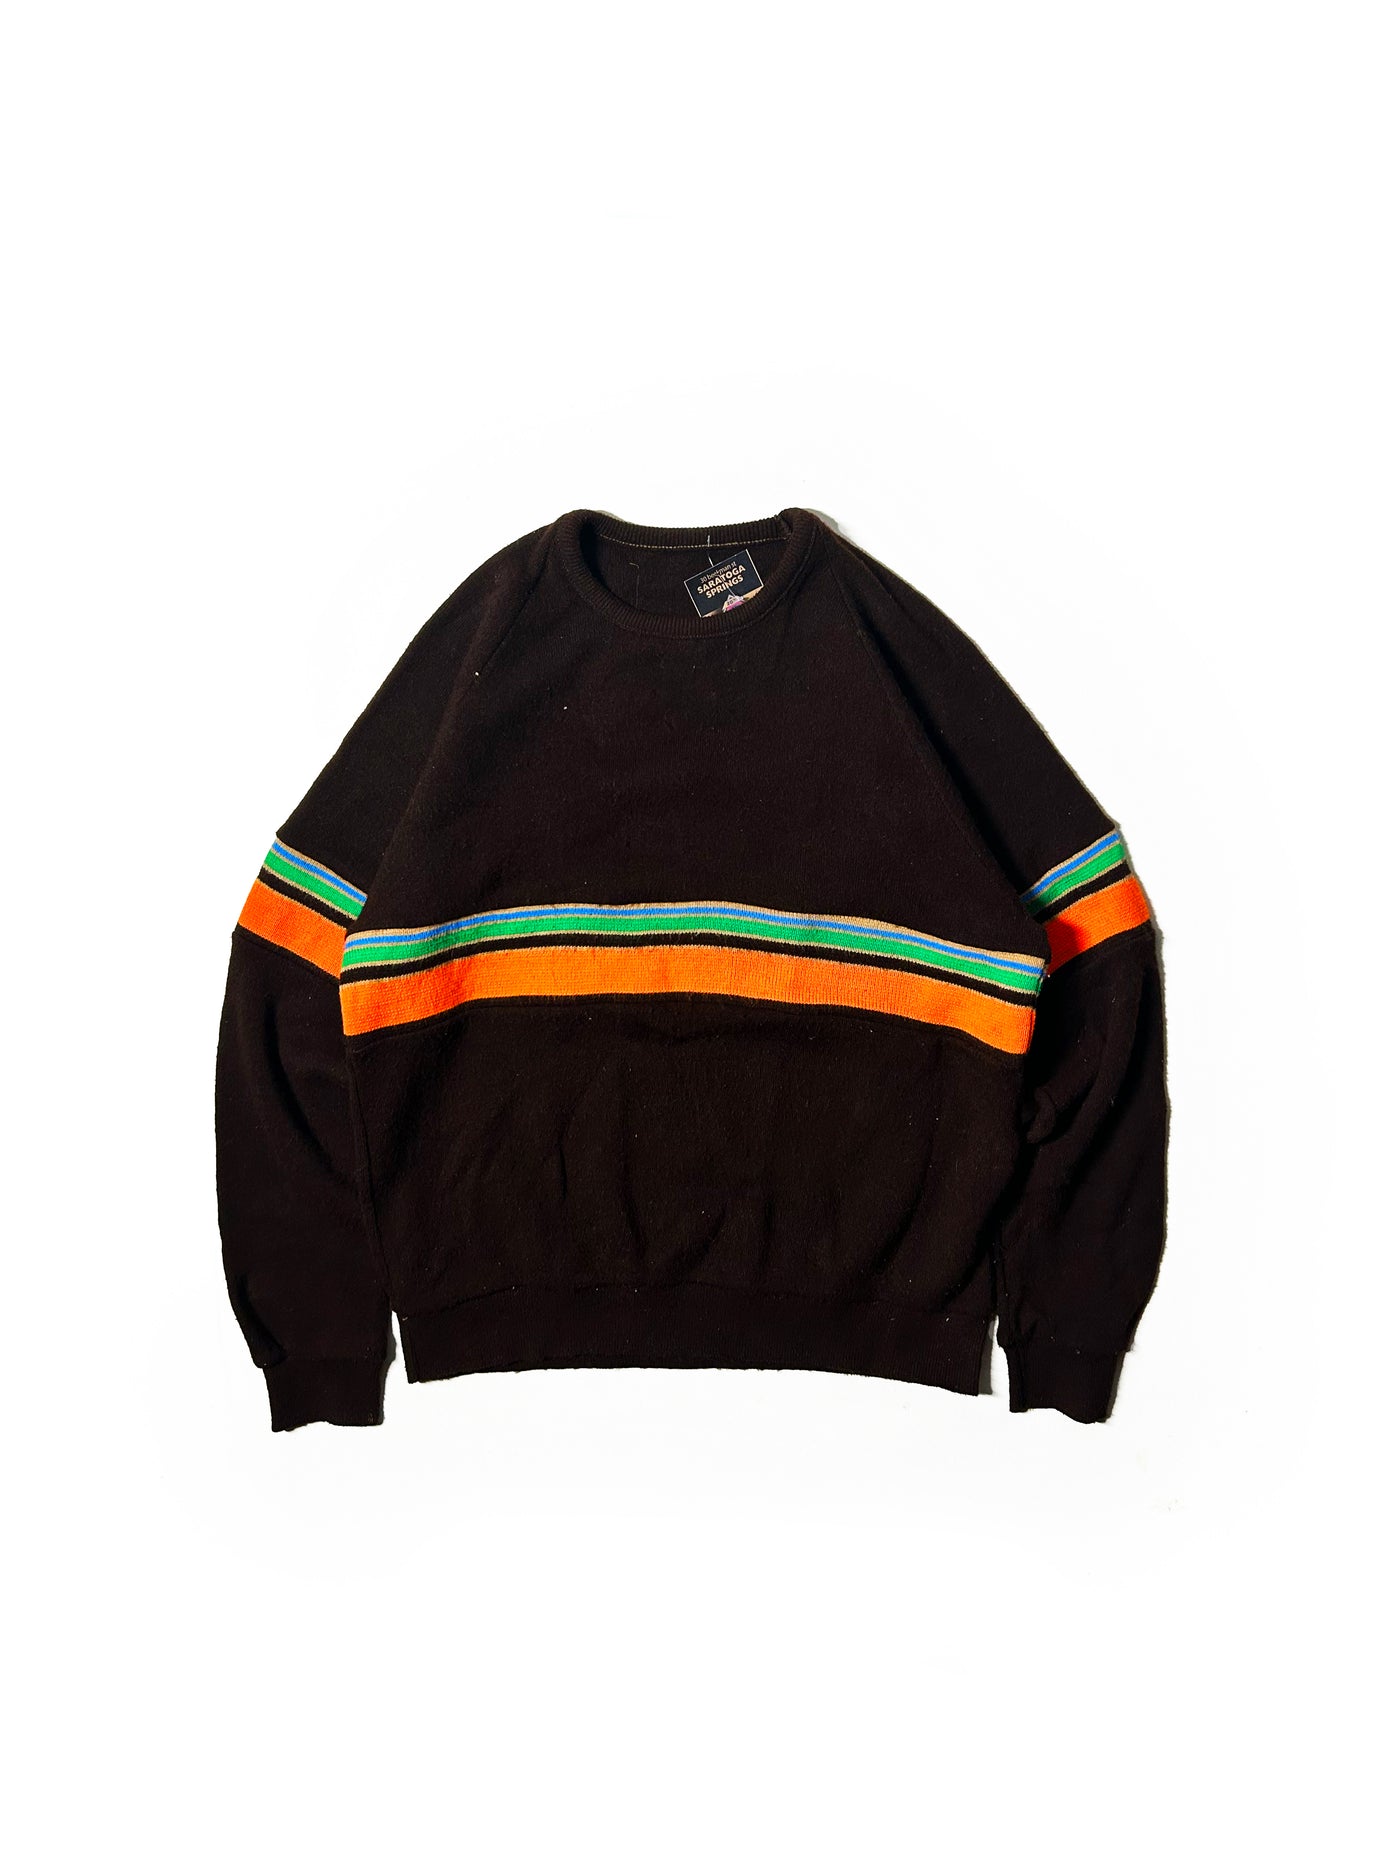 Vintage 70s 100% Wool Sweater